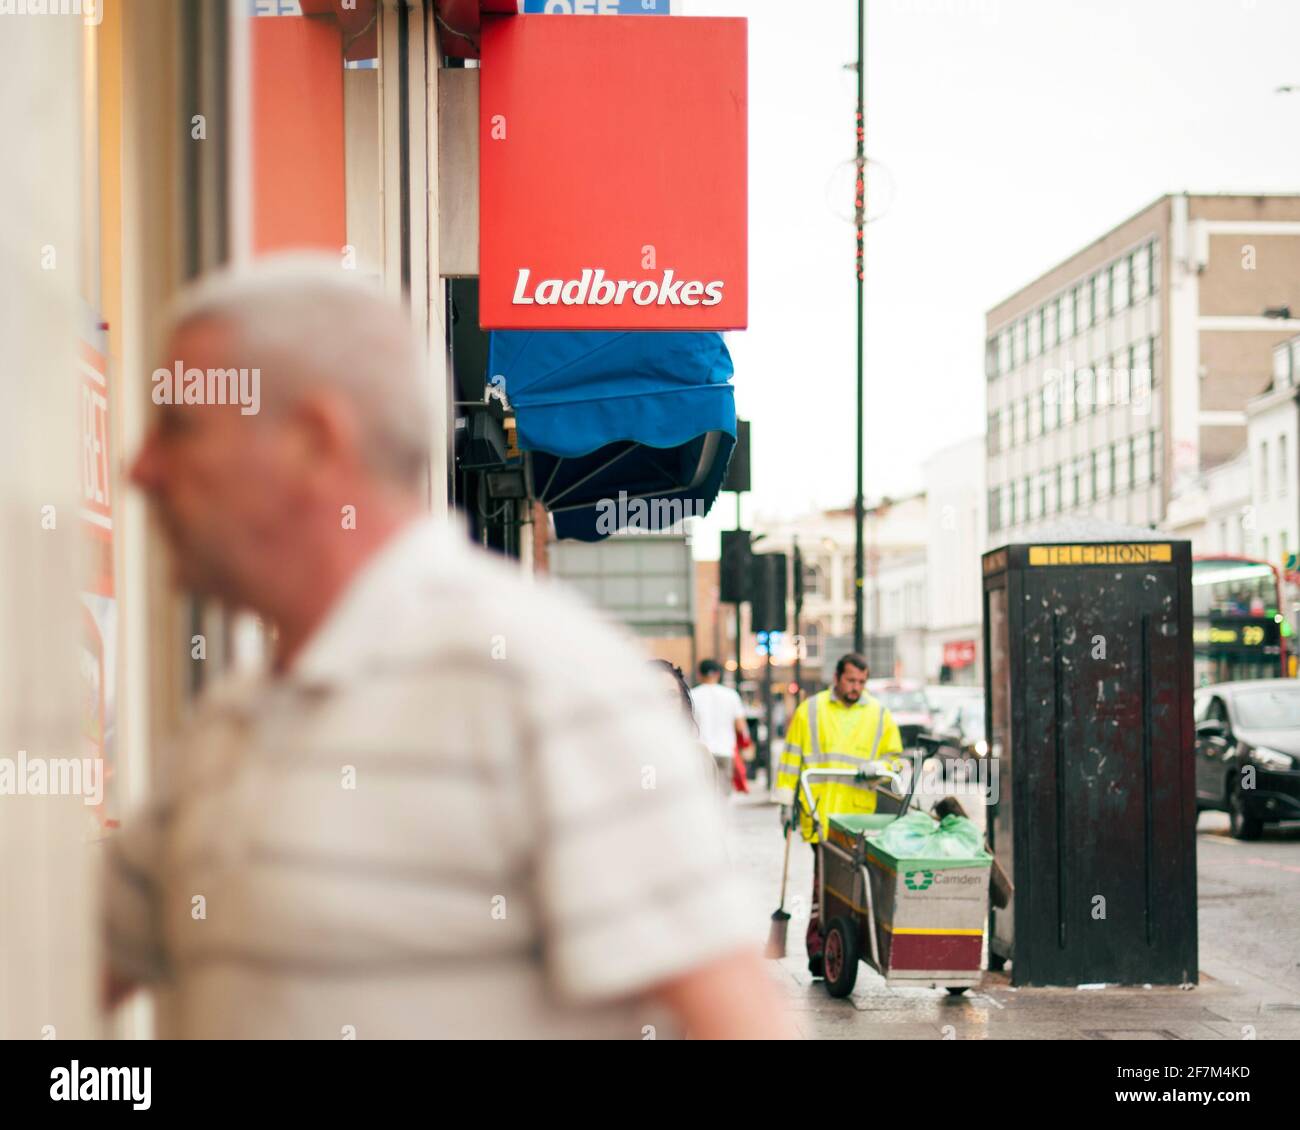 Jugador irreconocible, hombre de mediana edad caminando en una tienda de apuestas Ladbrokes. Apuestas deportivas, estilo de vida de juego. Camden High St, Londres, Reino Unido. Ago 2015 Foto de stock